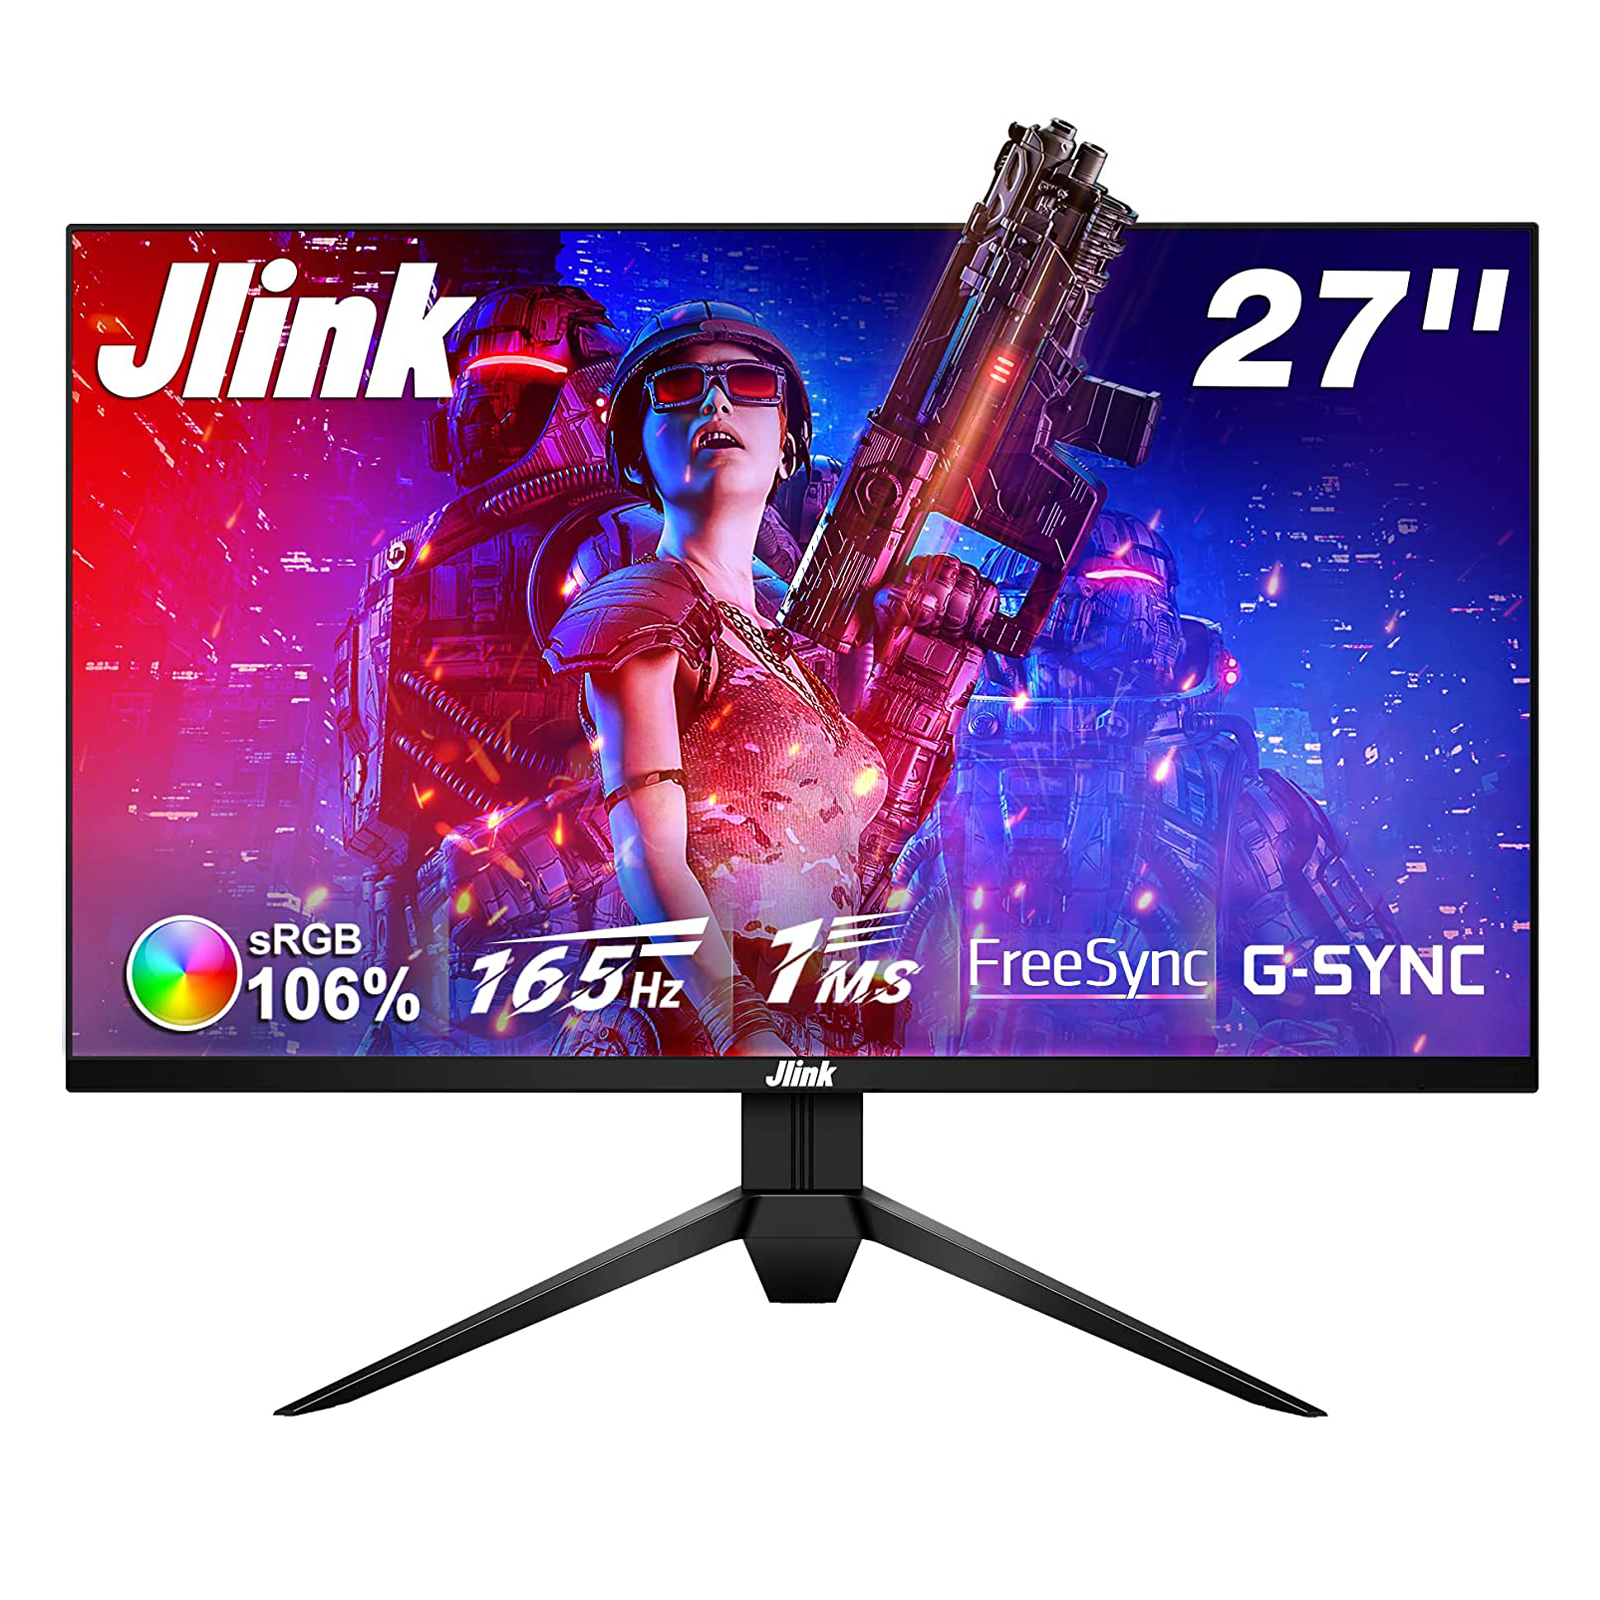 27 Gaming Monitor Jlink 1080P 165Hz